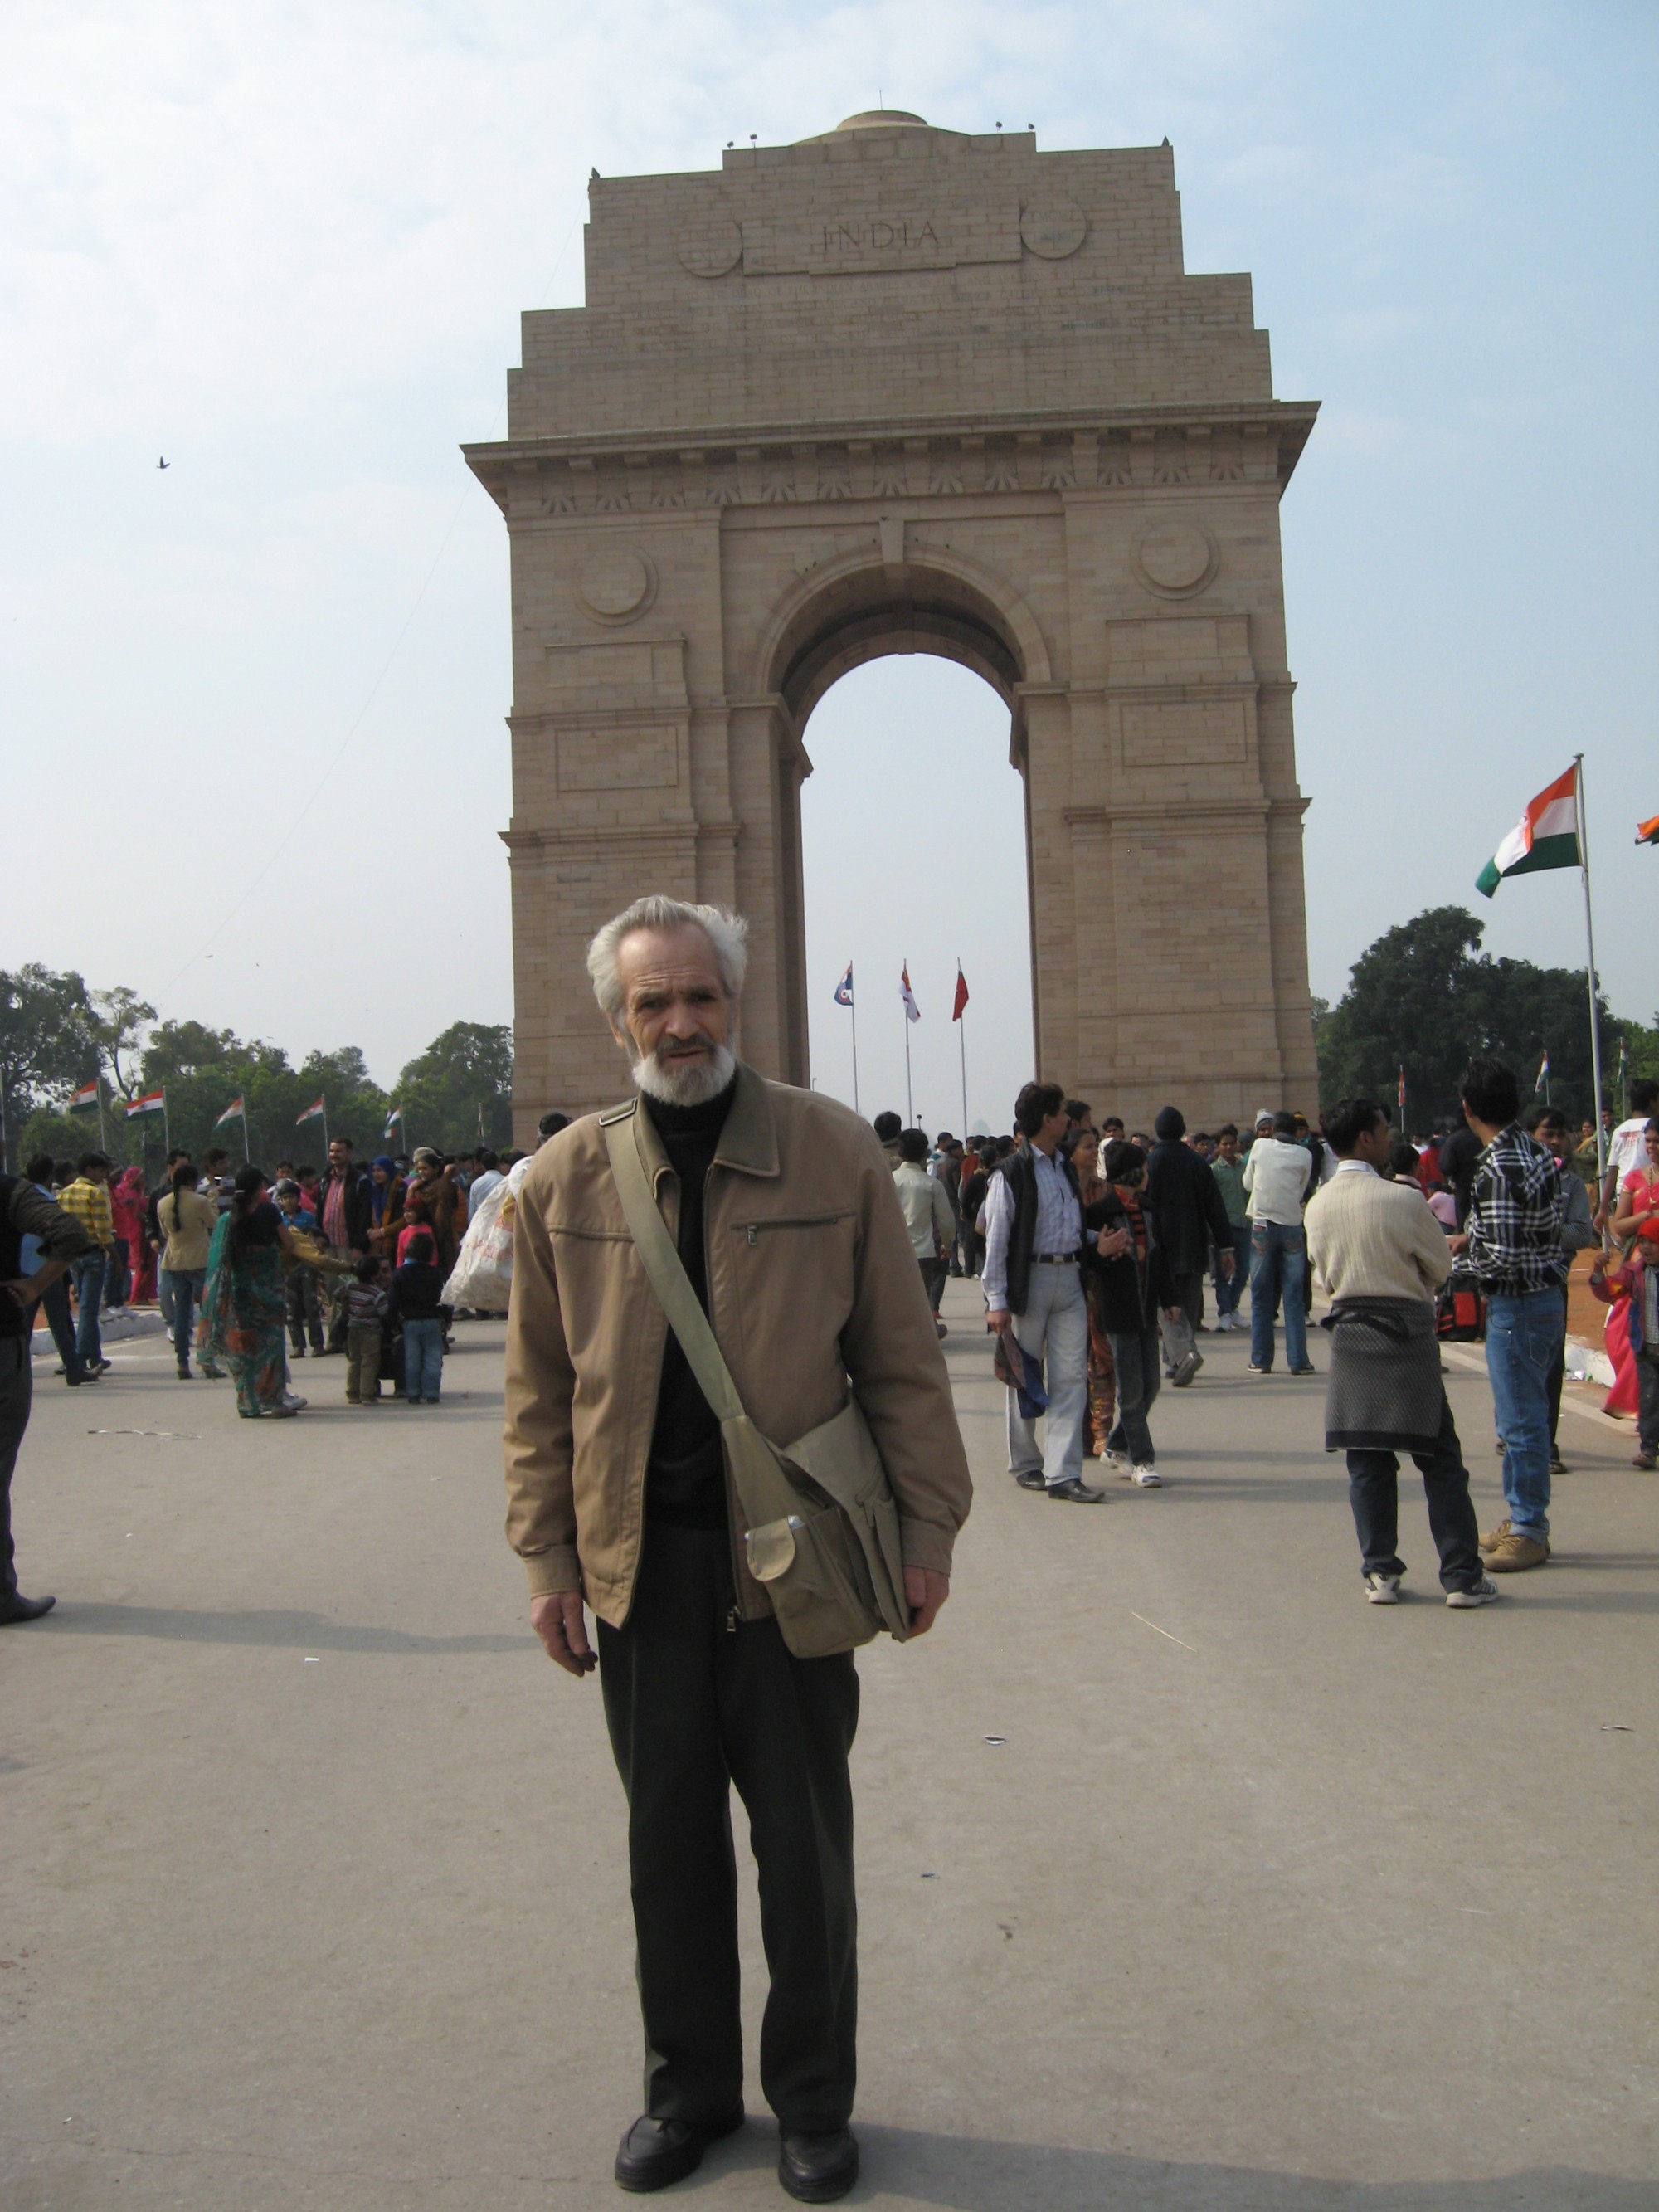 Ворота Индии в Дели